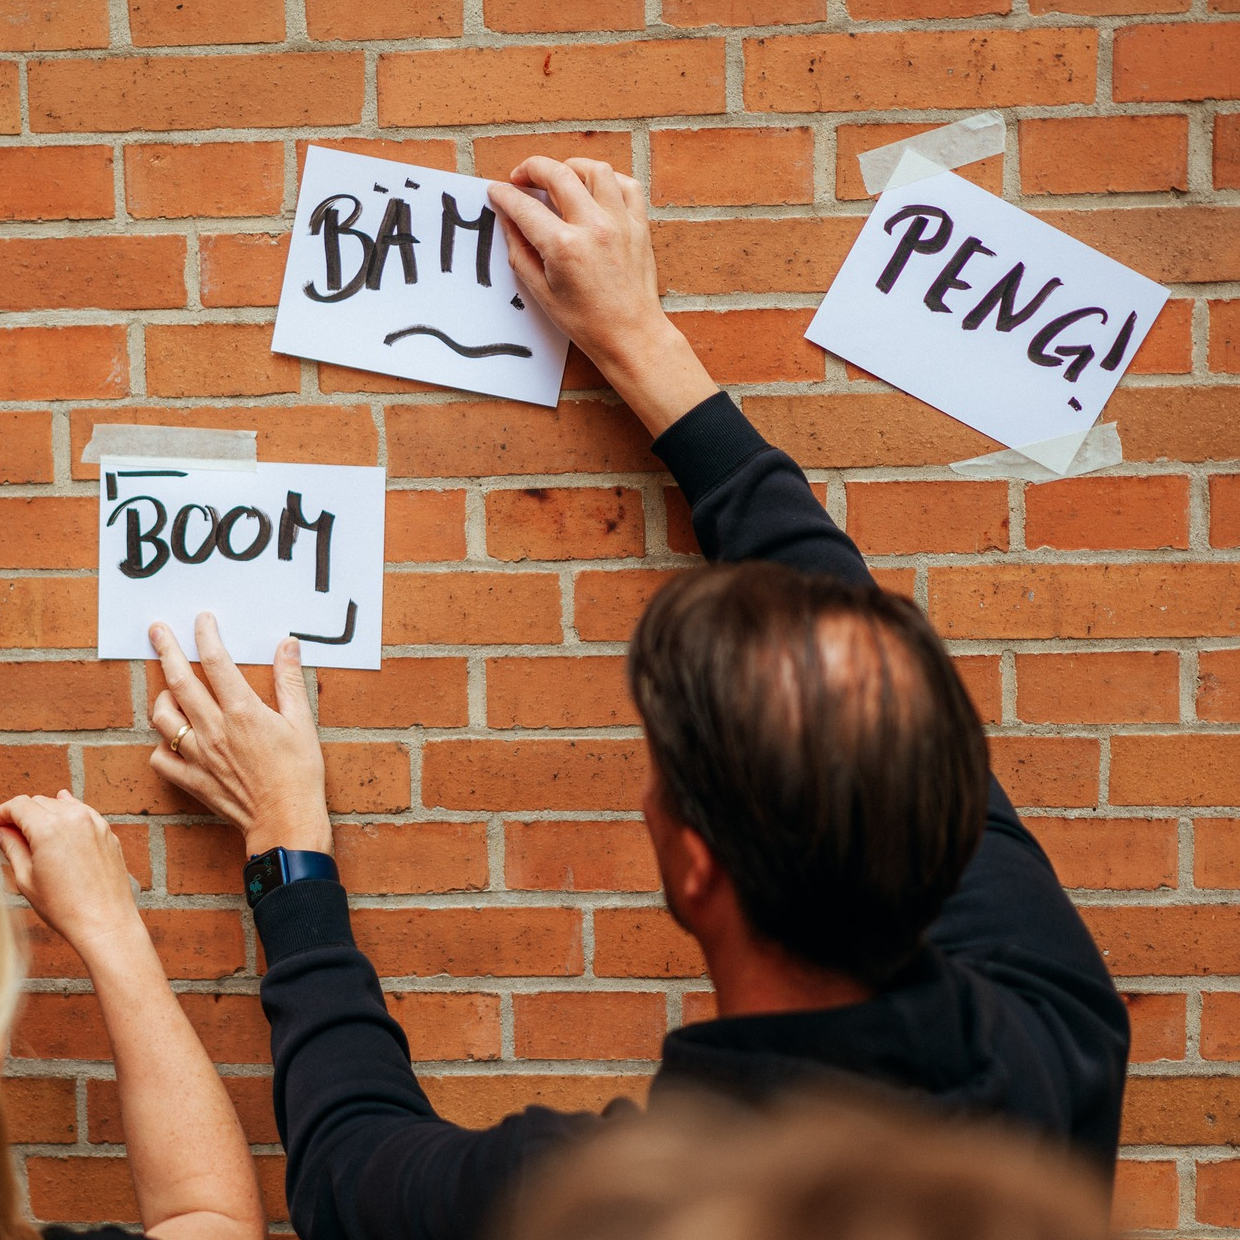 Eine Person hängt weiße Zettel an eine Backsteinwand, auf denen handschriftlich 